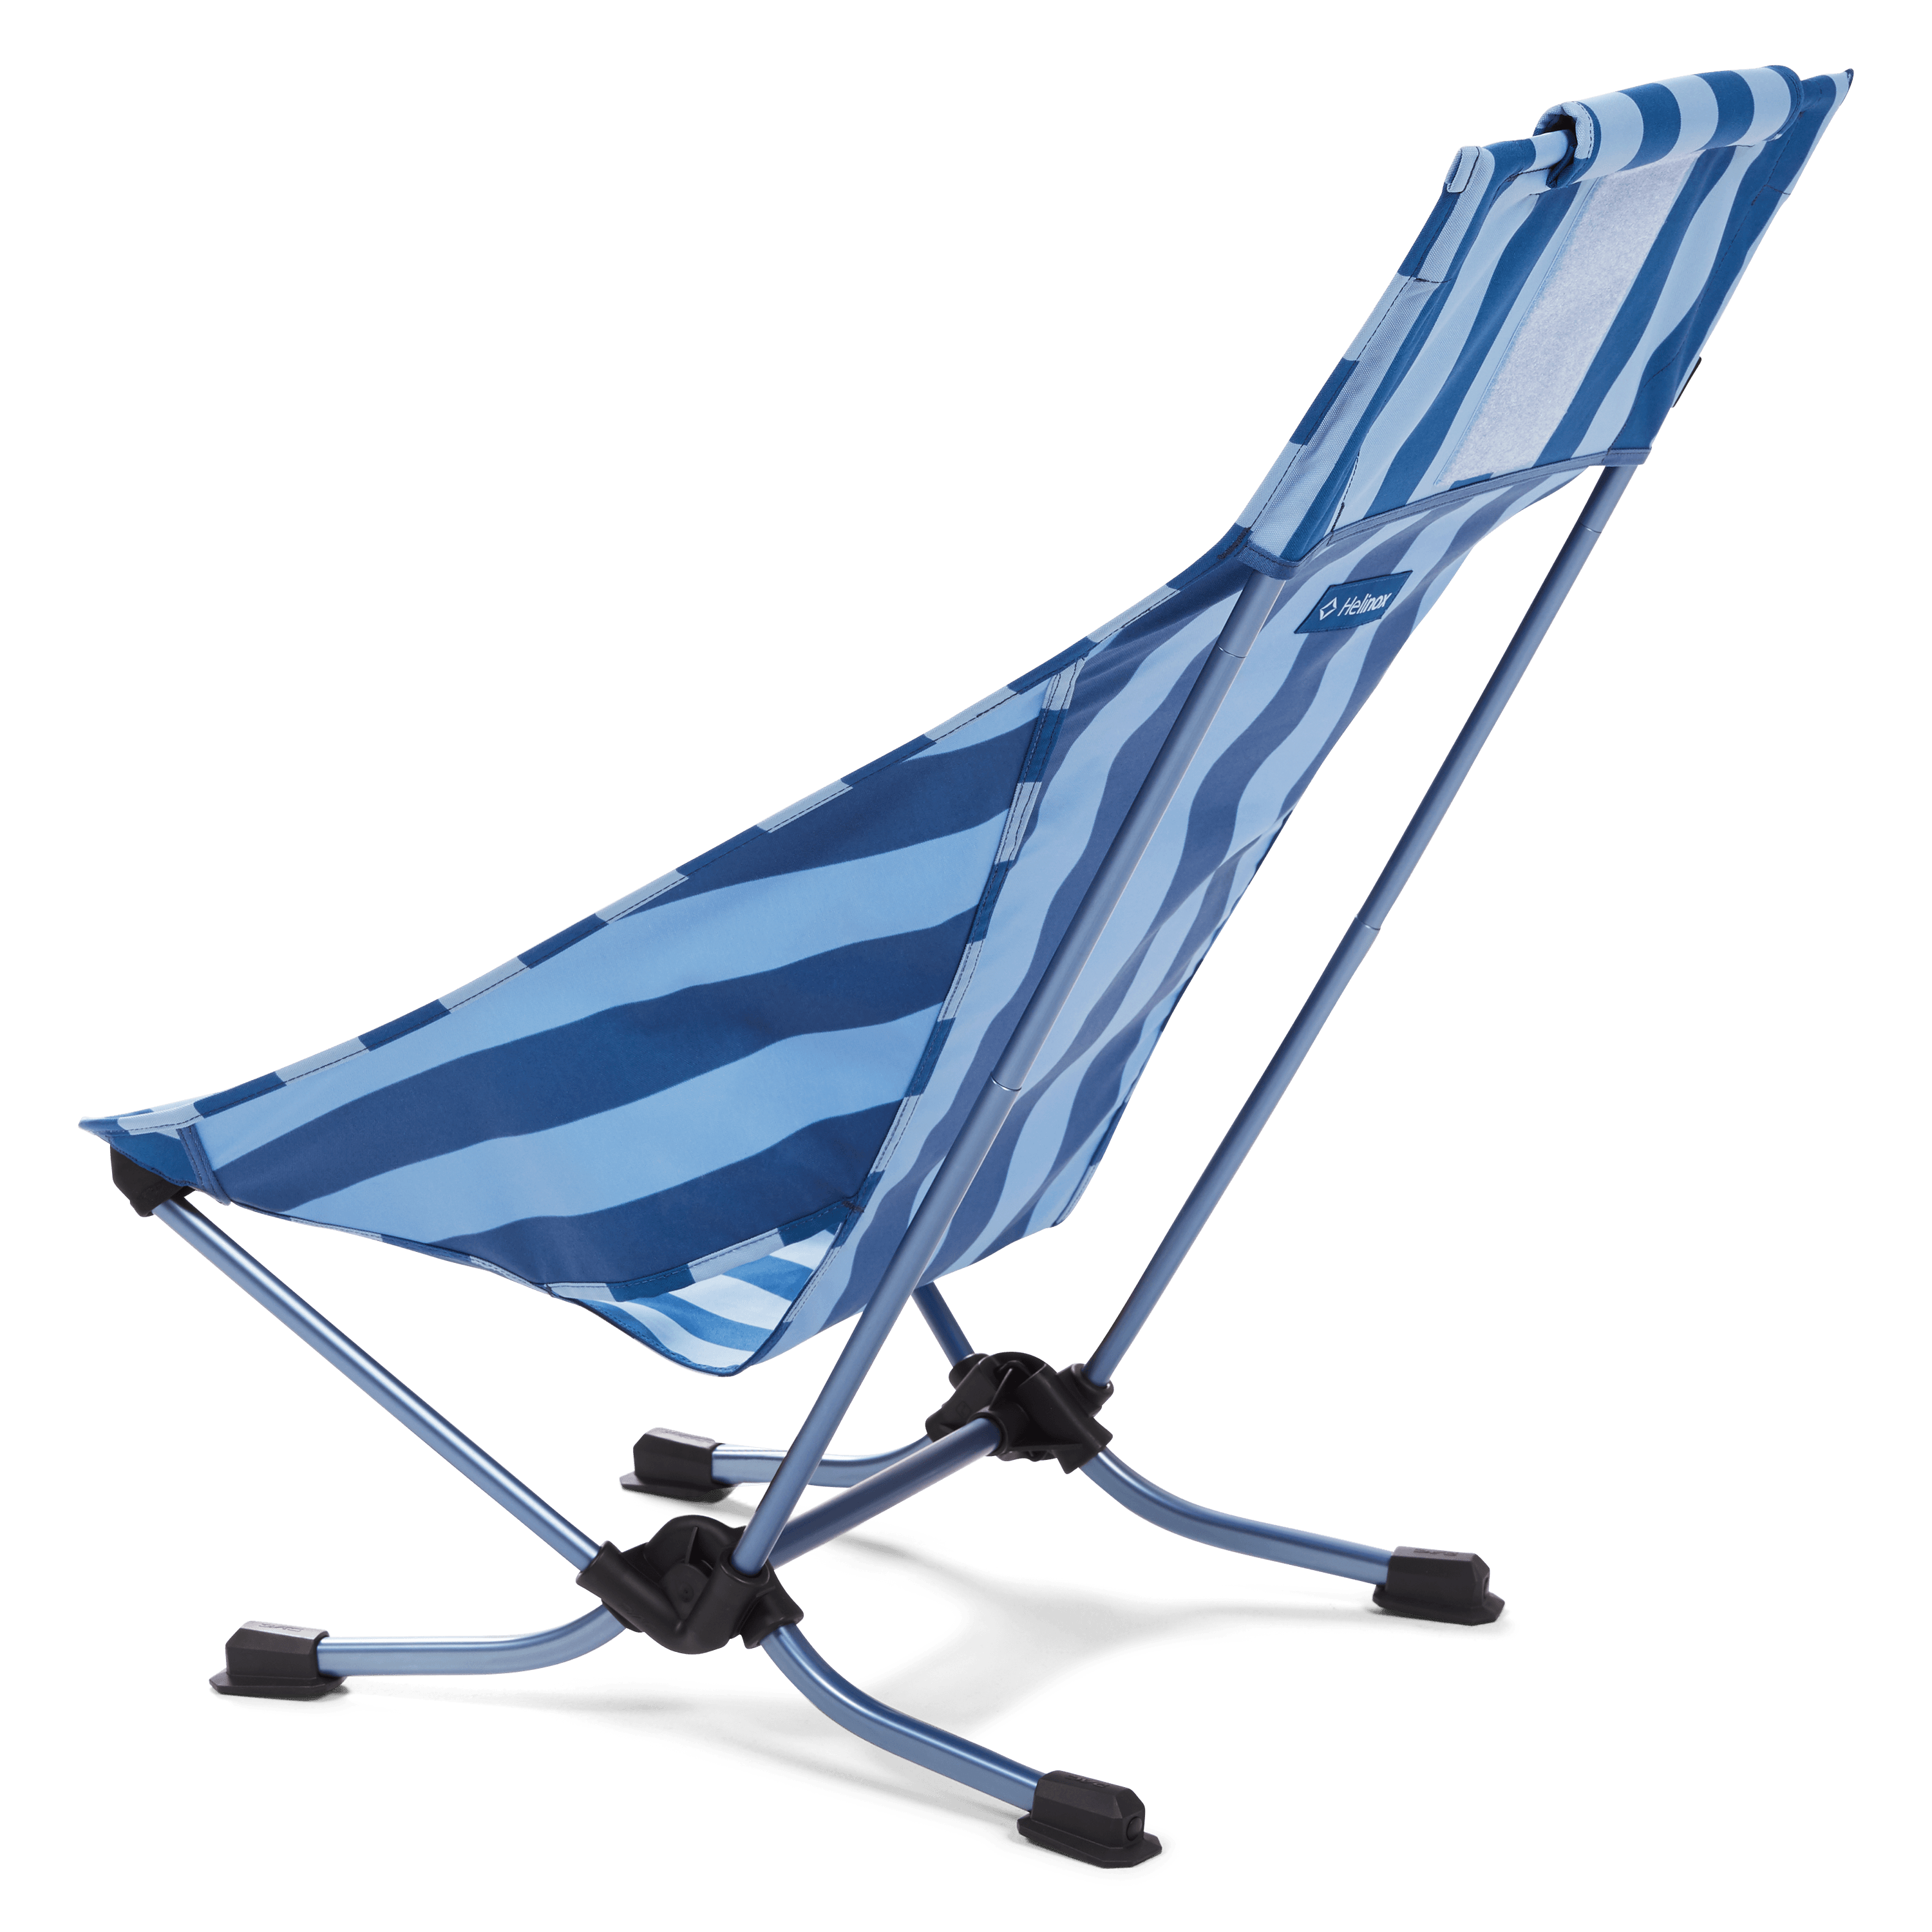 lightweight travel beach chair